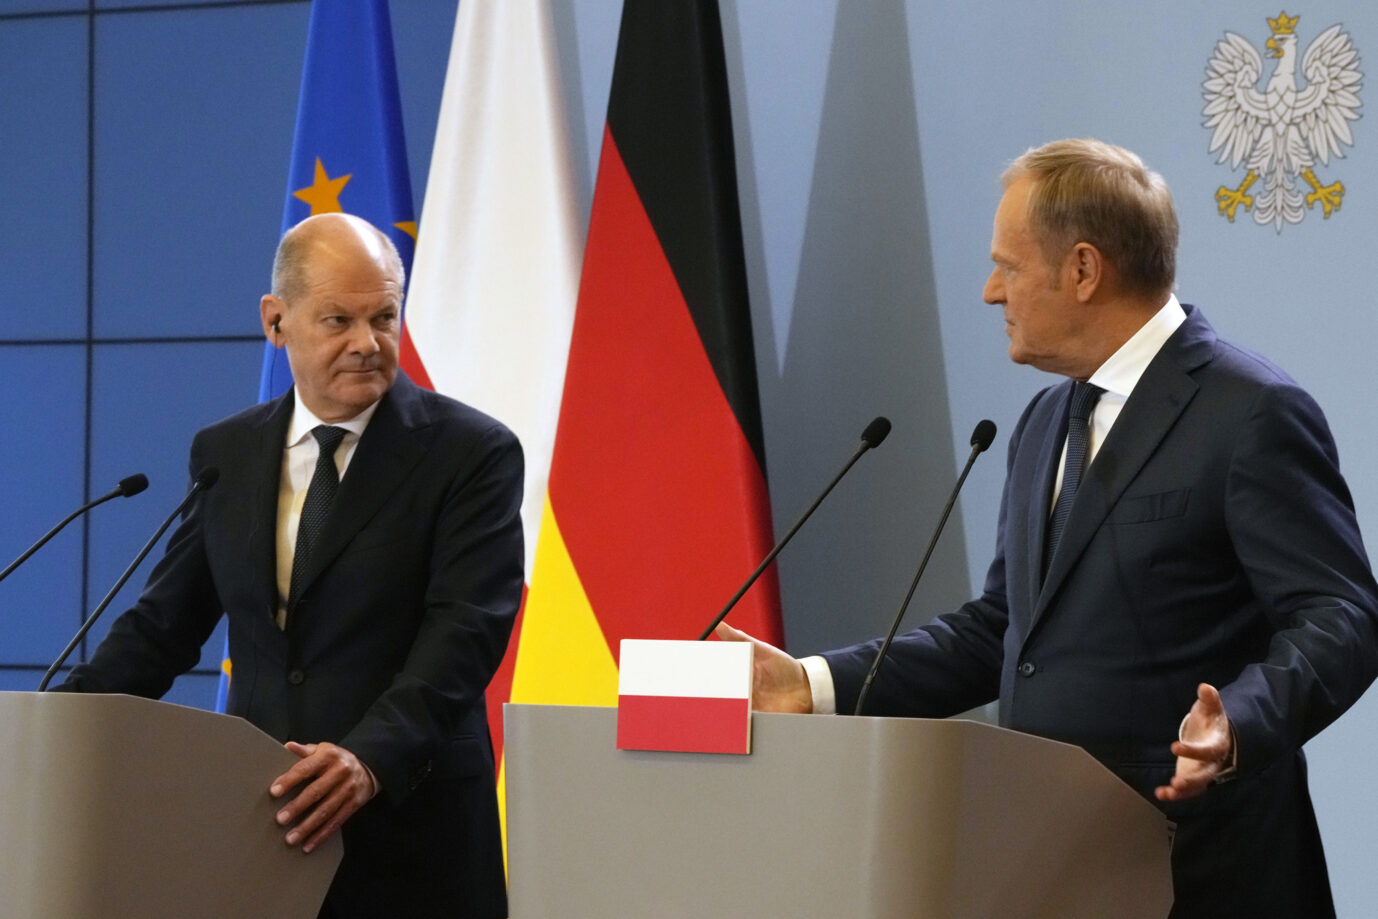 Engere Zusammenarbeit angekündigt: Engere Zusammenarbeit angekündigt Scholz will Entschädigung für polnische Opfer der deutschen Besatzung